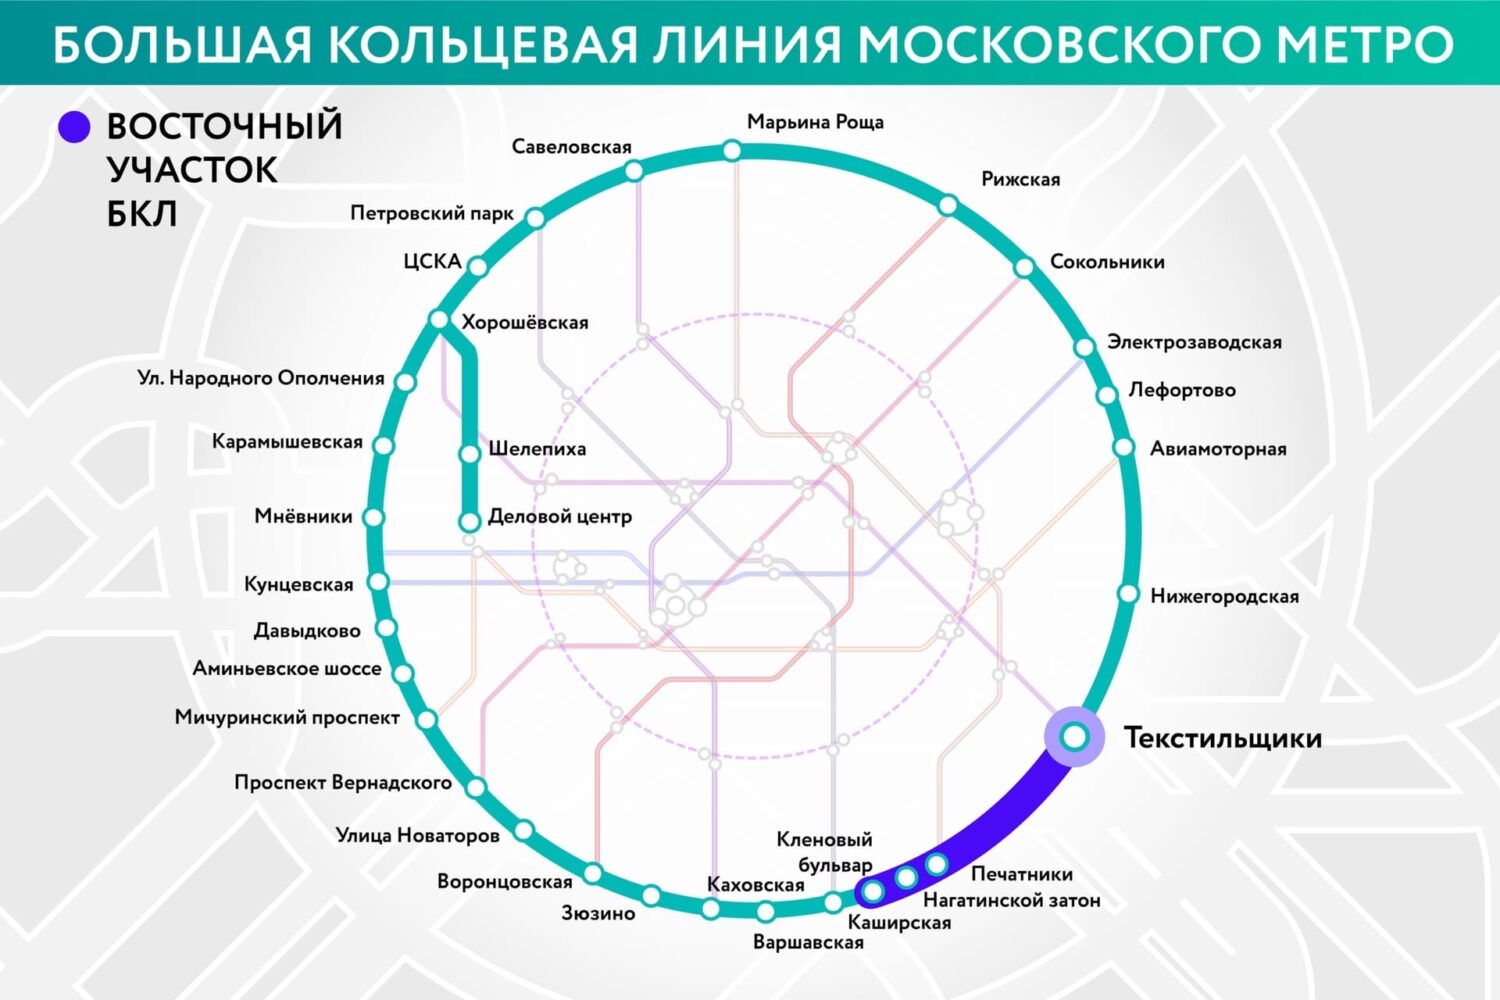 Восточный участок БКЛ метро достроят в 2022 году